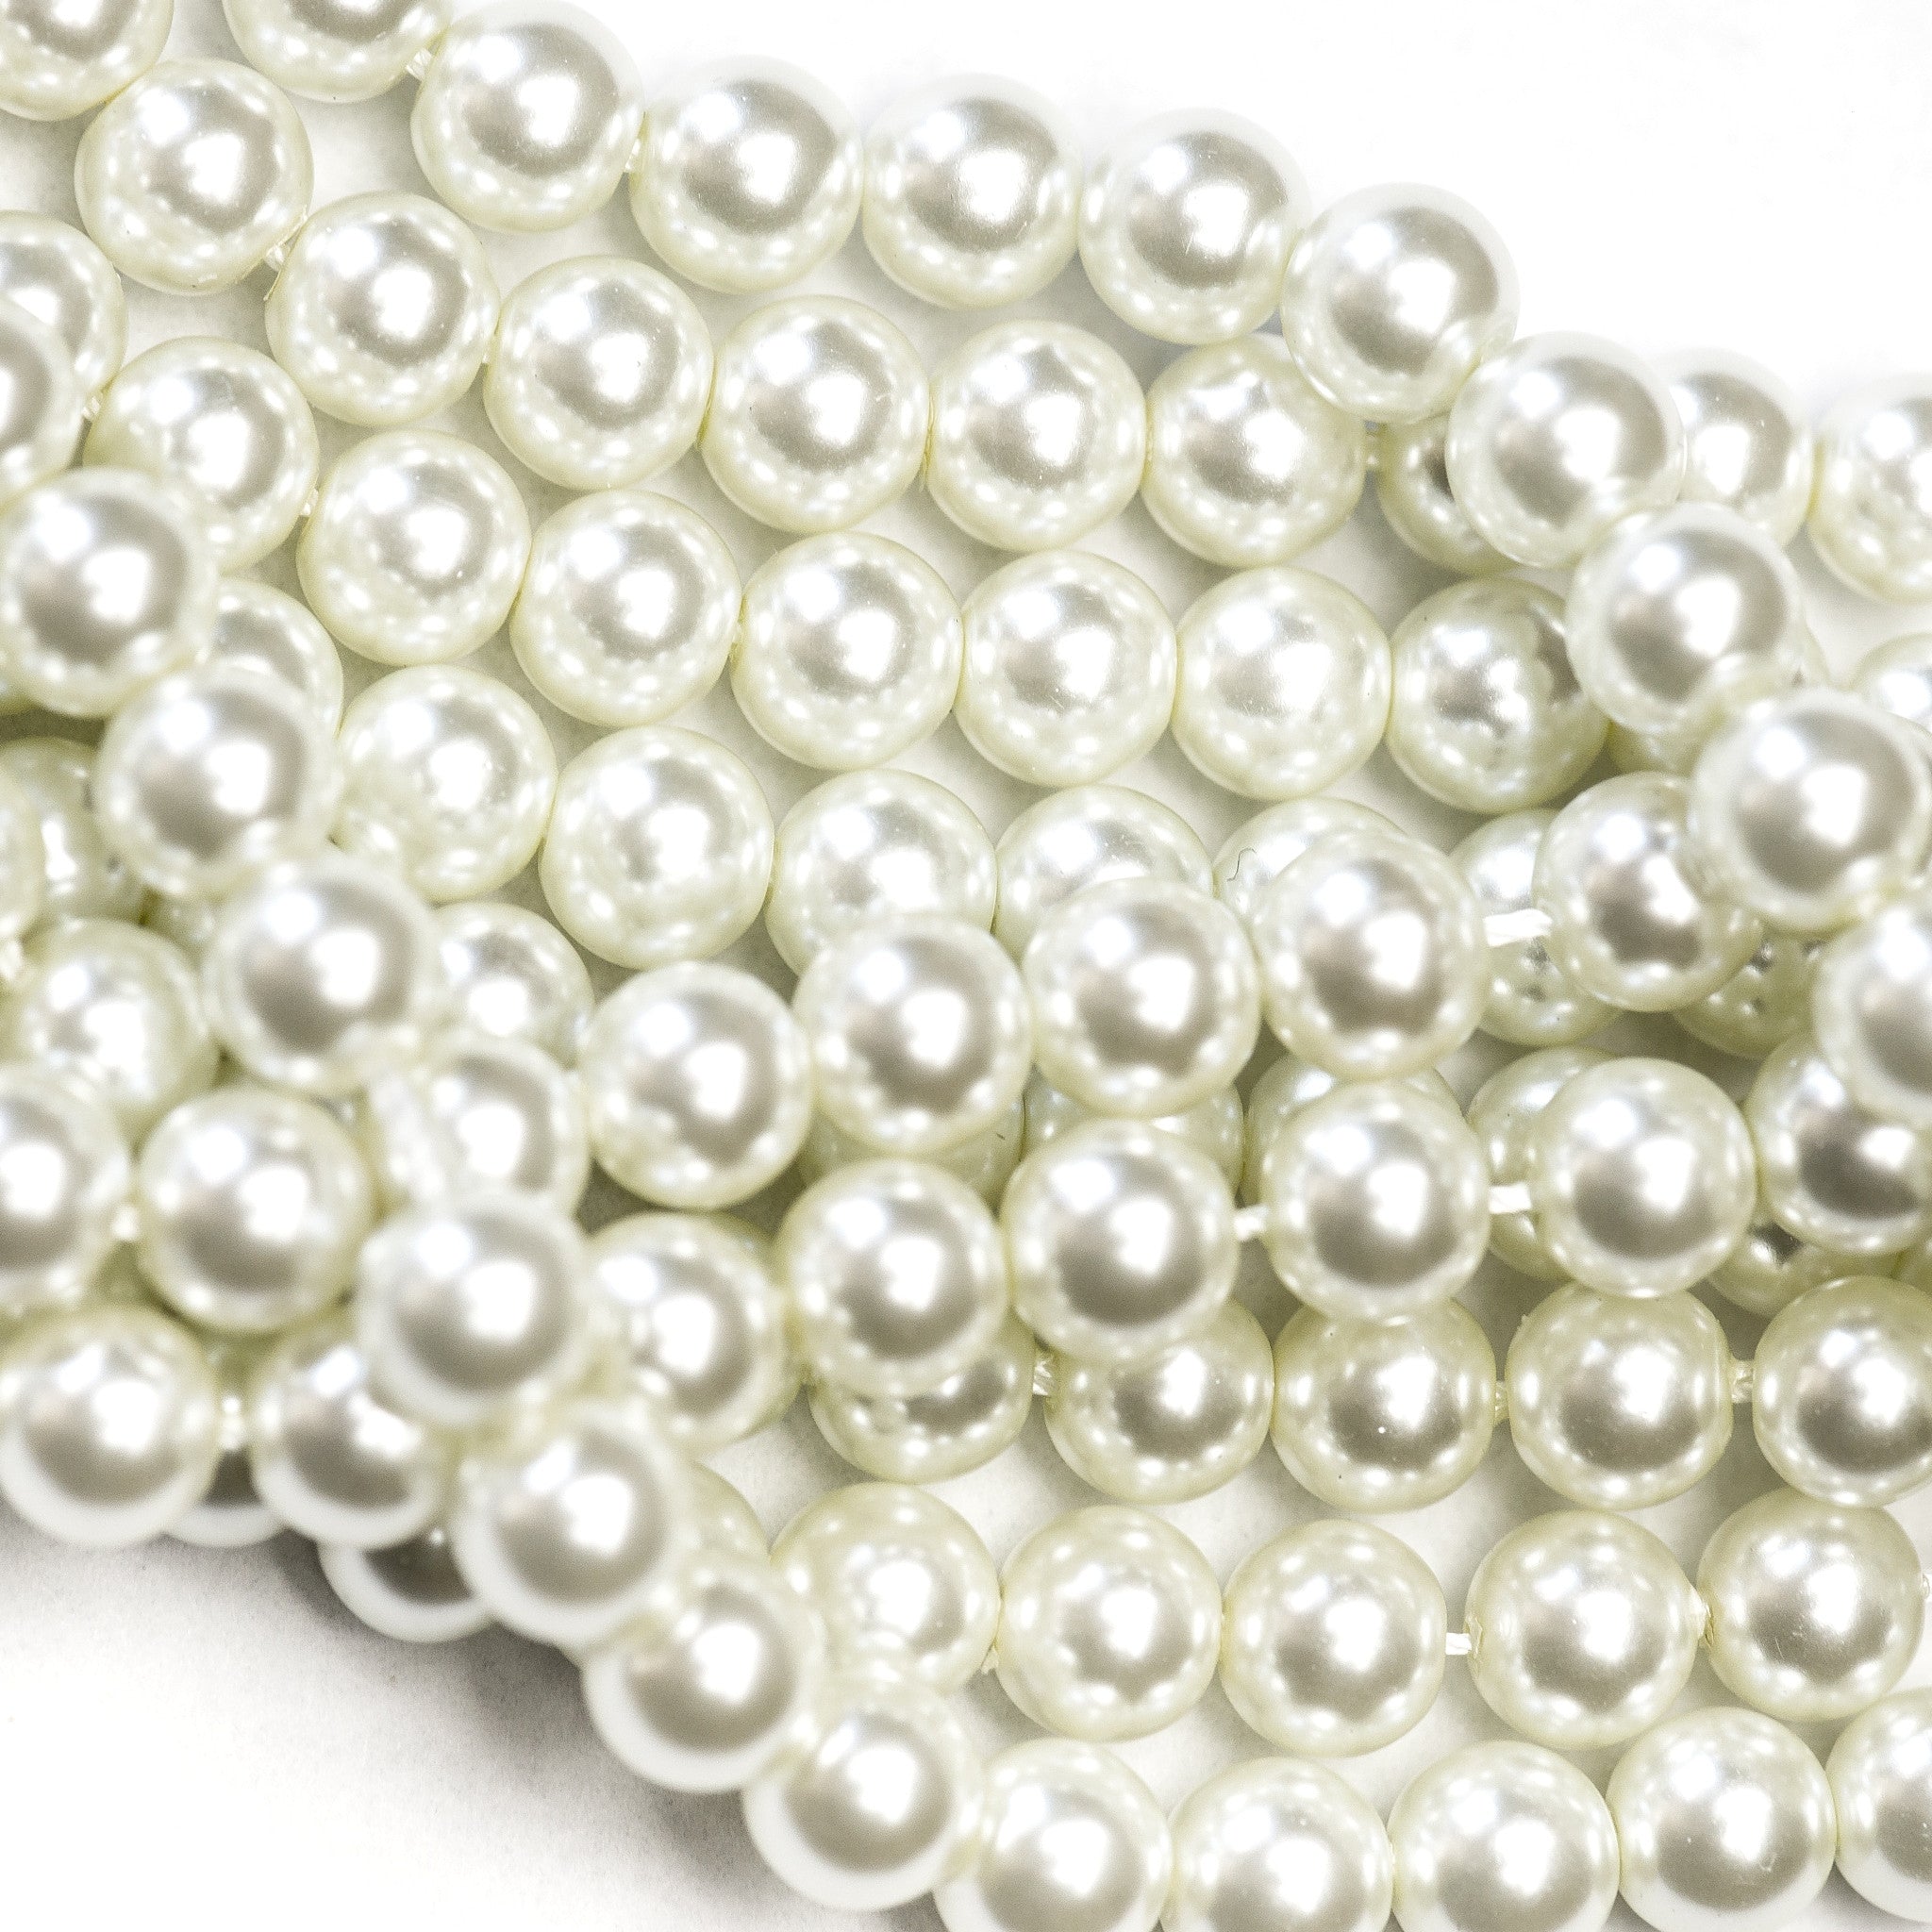 8MM White Glass Pearls 16" (1 dozen strands)